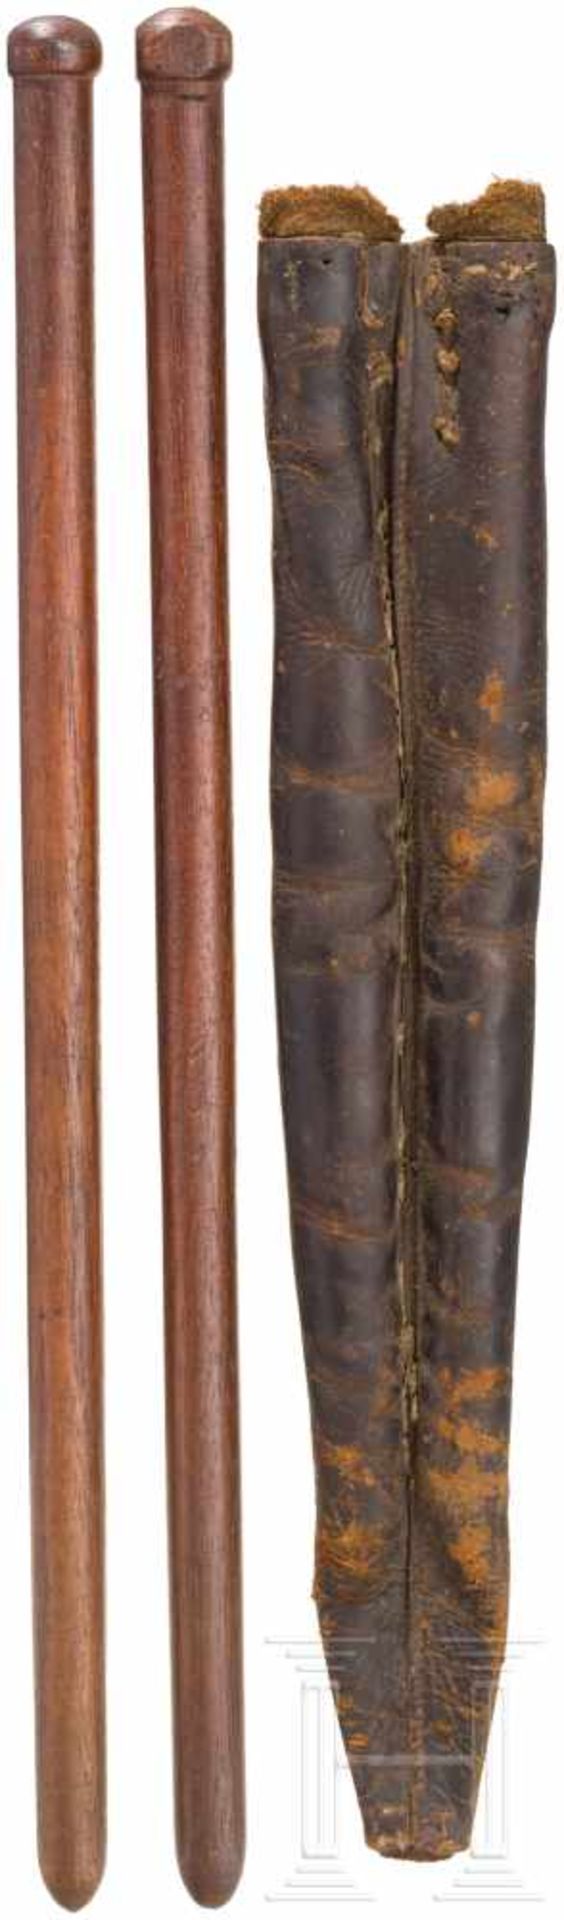 Drumsticks in leather case, c. 1880Holz und Leder (beschädigt), Länge der Stöcke jew. 48 cm. - Bild 2 aus 2